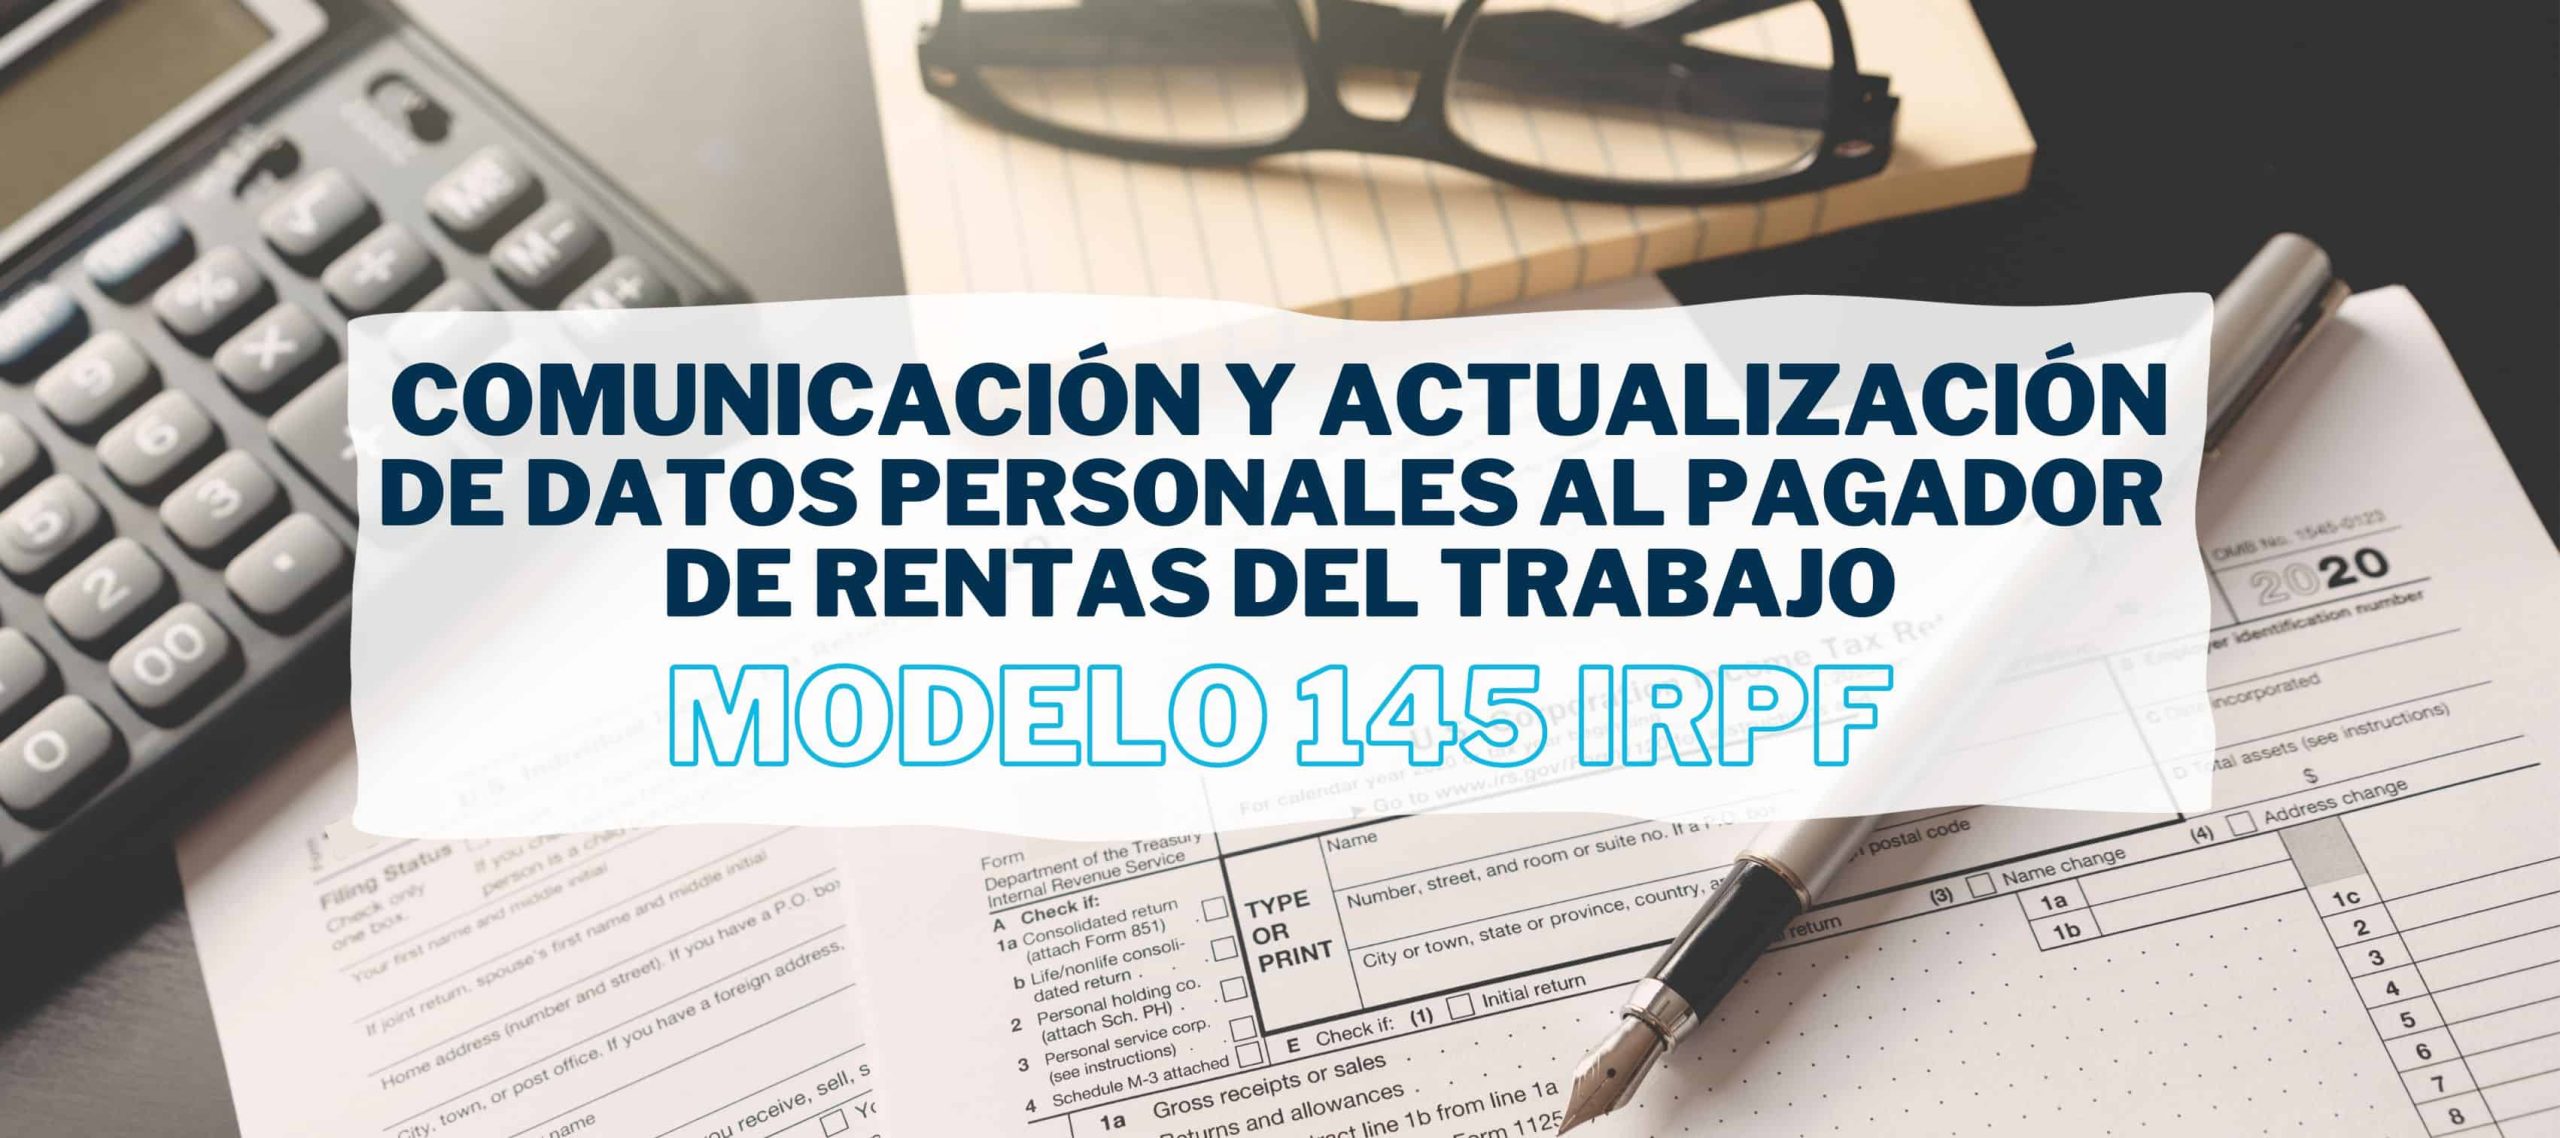 Trabajador rellenando el modelo 145 IRPF a petición del pagador de sus rentas del trabajo.